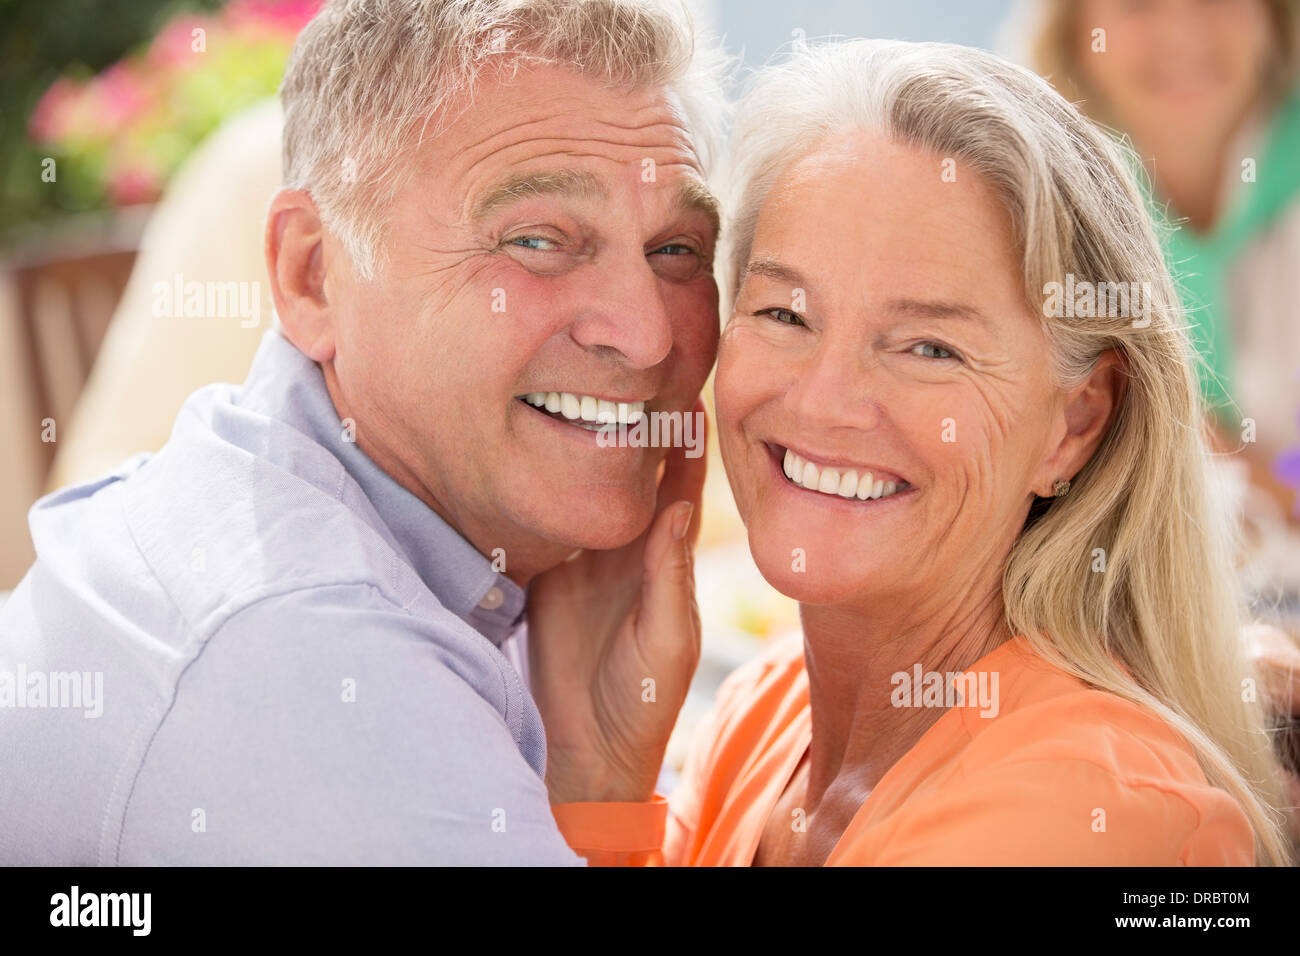 Senior couple smiling outdoors Stock Photo